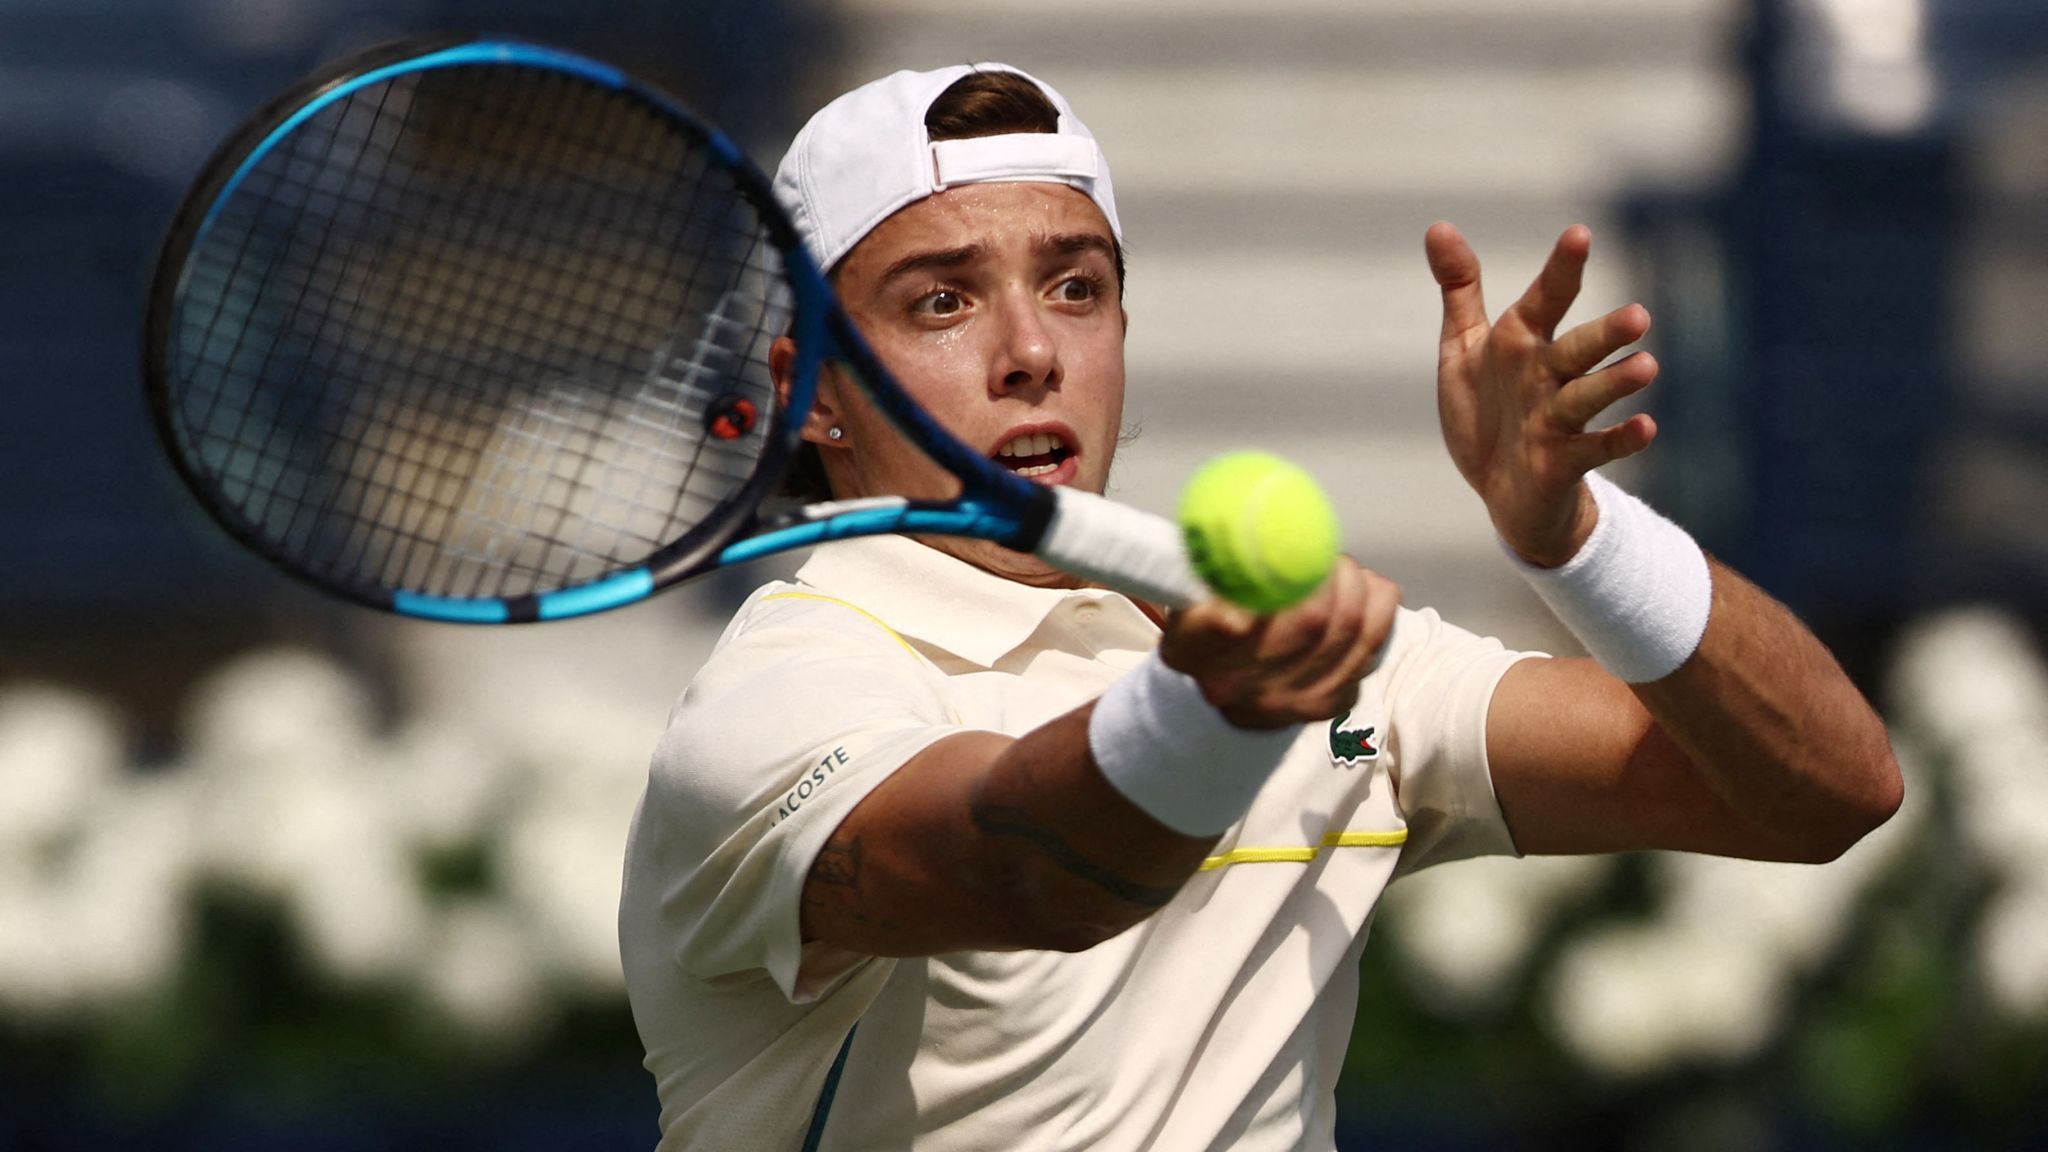 El tenista francés Cazaux se desploma en Miami por agotamiento y exceso de calor